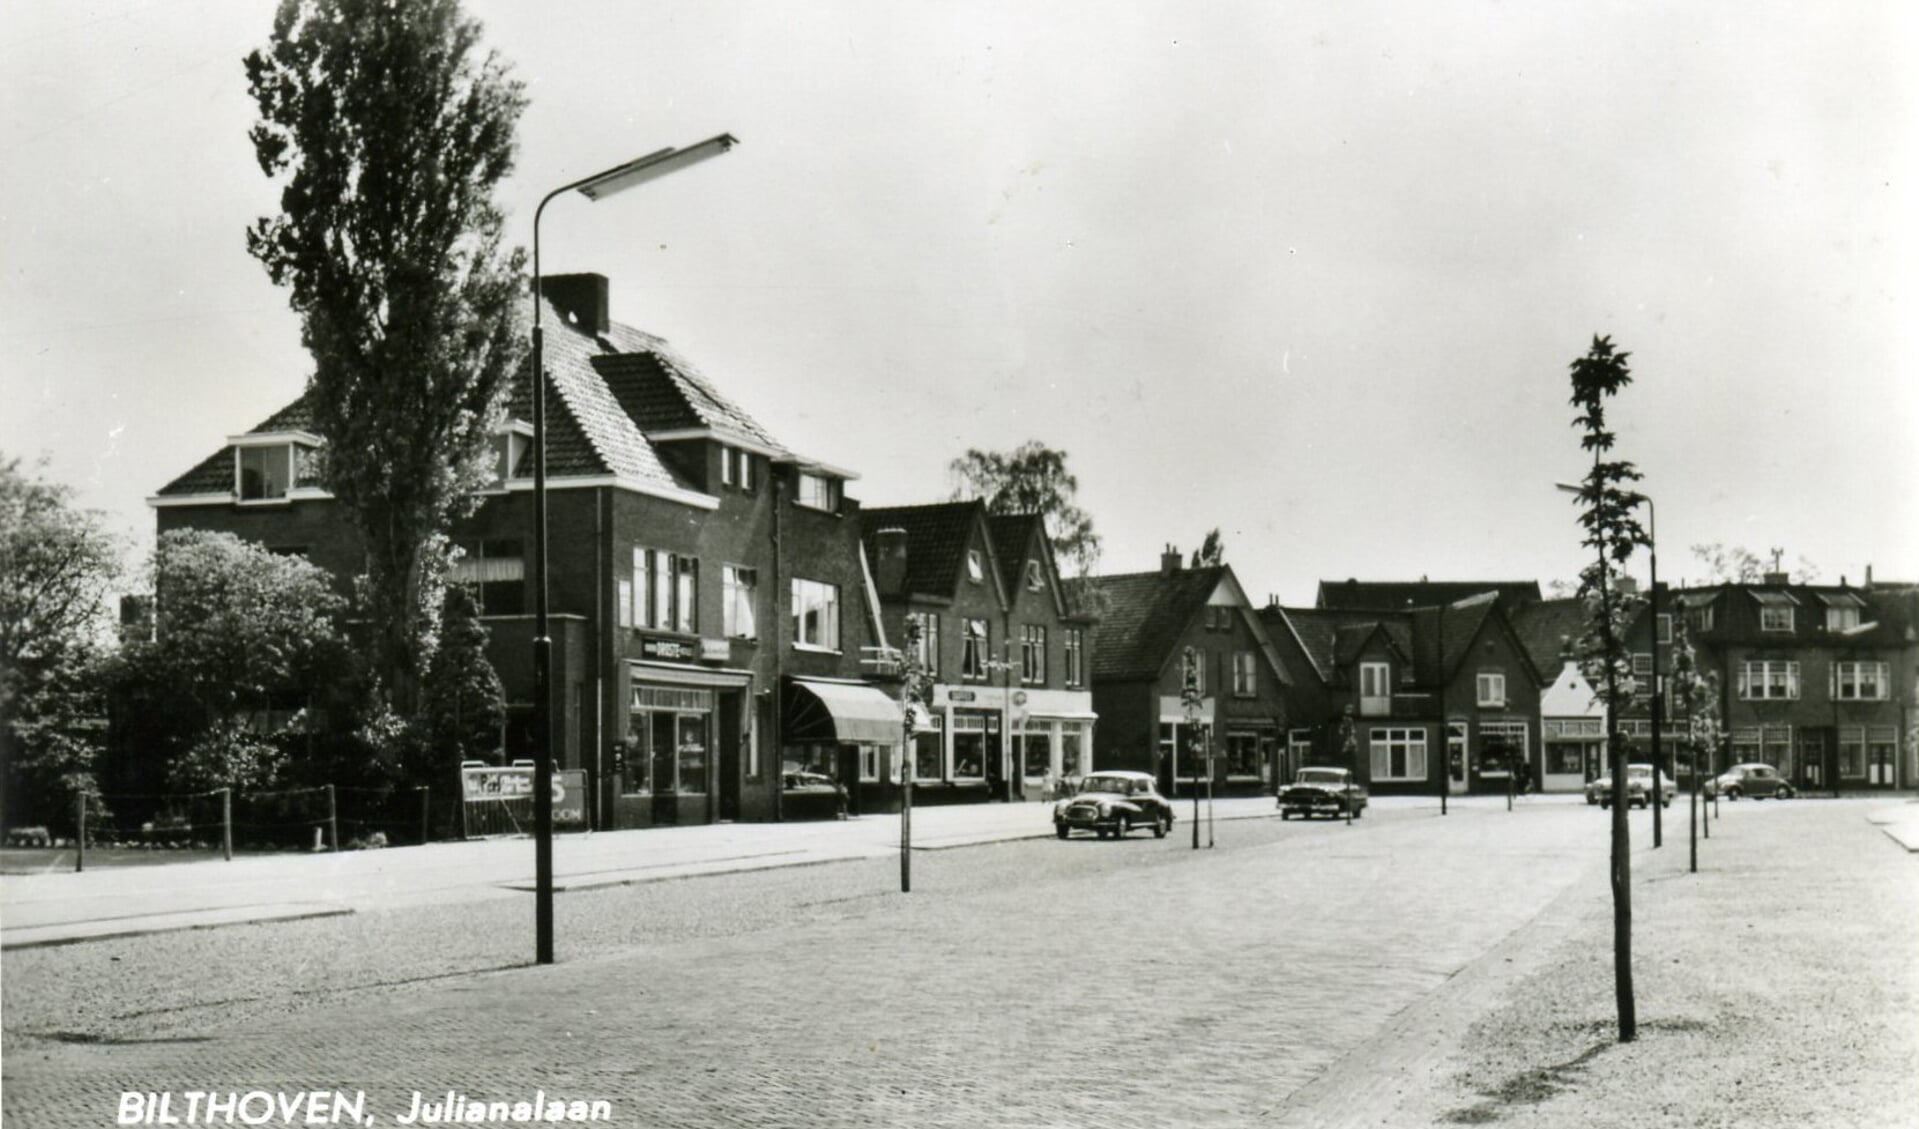 Het pand met de uitgeklapte luifel links is Julianalaan 38a in Bilthoven. (uit de digitale verzameling van Rienk Miedema)
